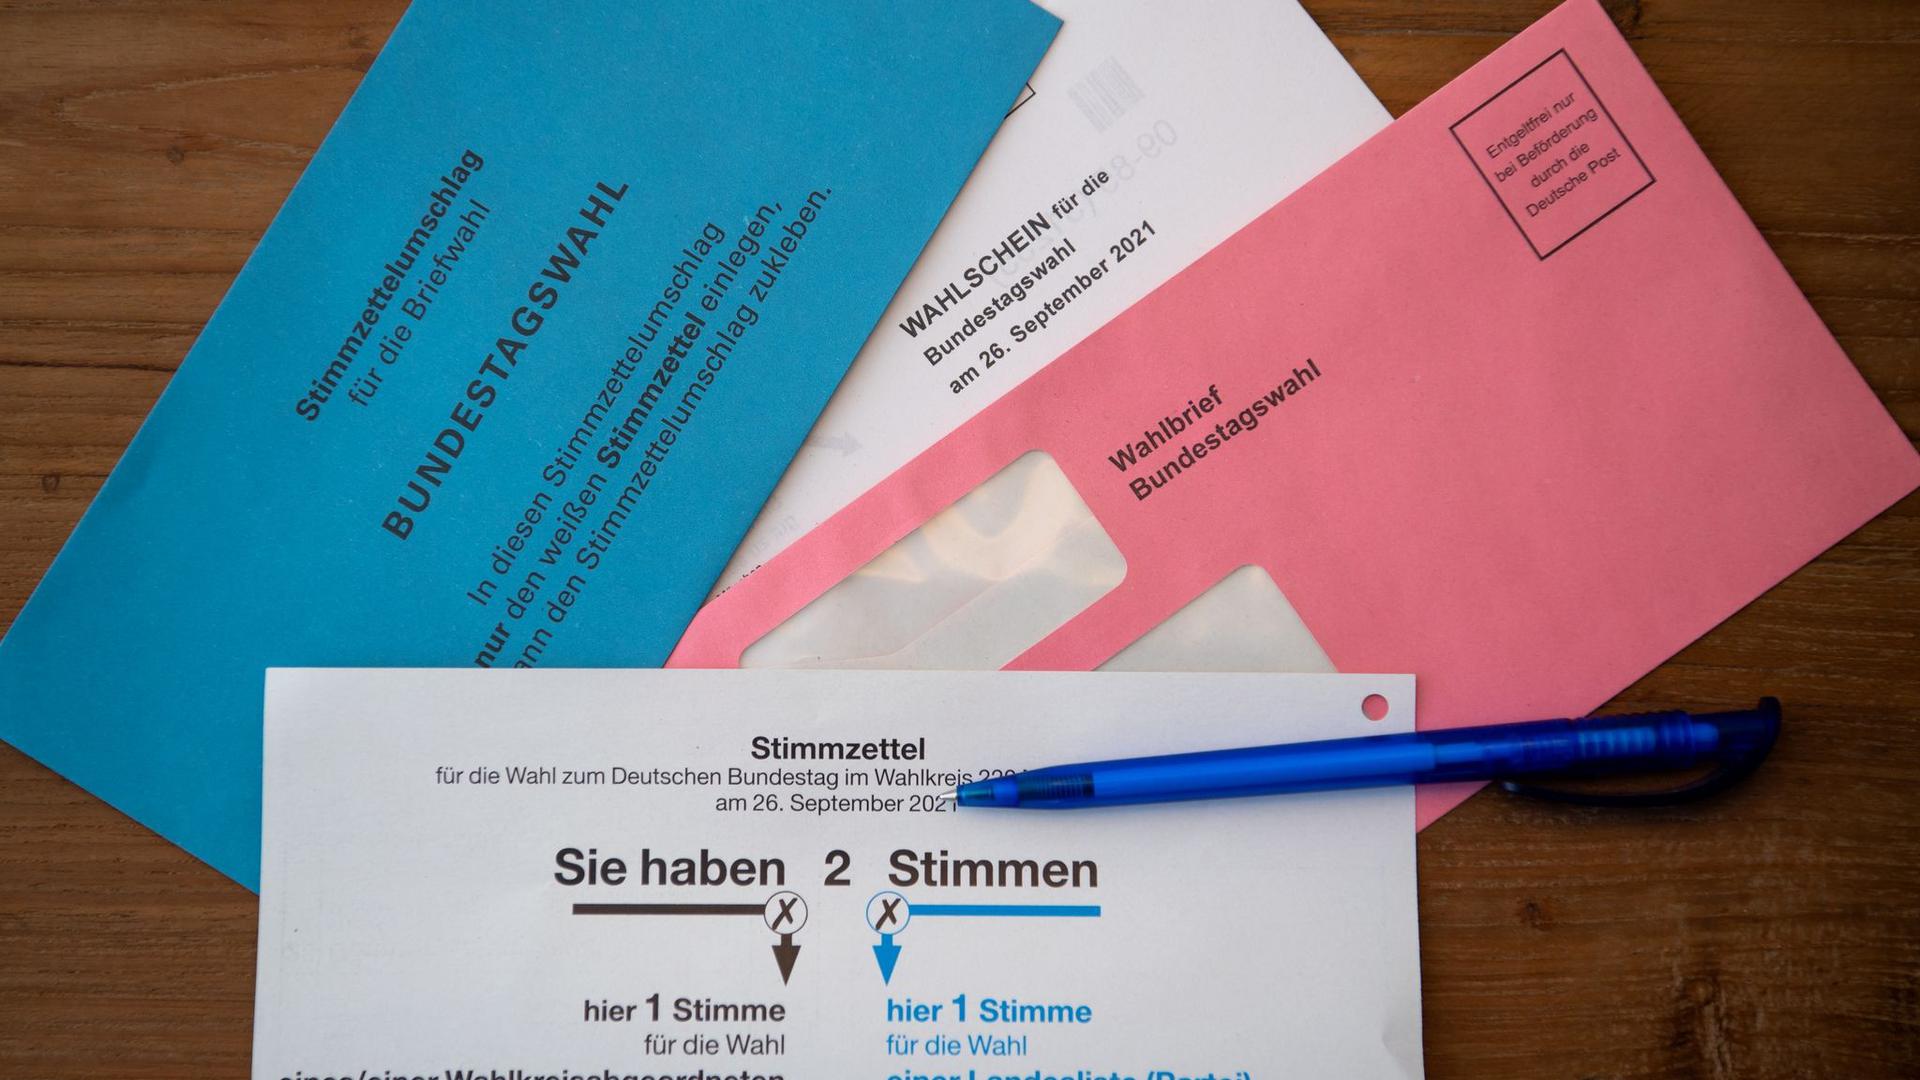 Briefwahlunterlagen für die Bundestagswahl 2021 mit Stimmzettel und Stimmzettelumschlag liegen auf einem Tisch.